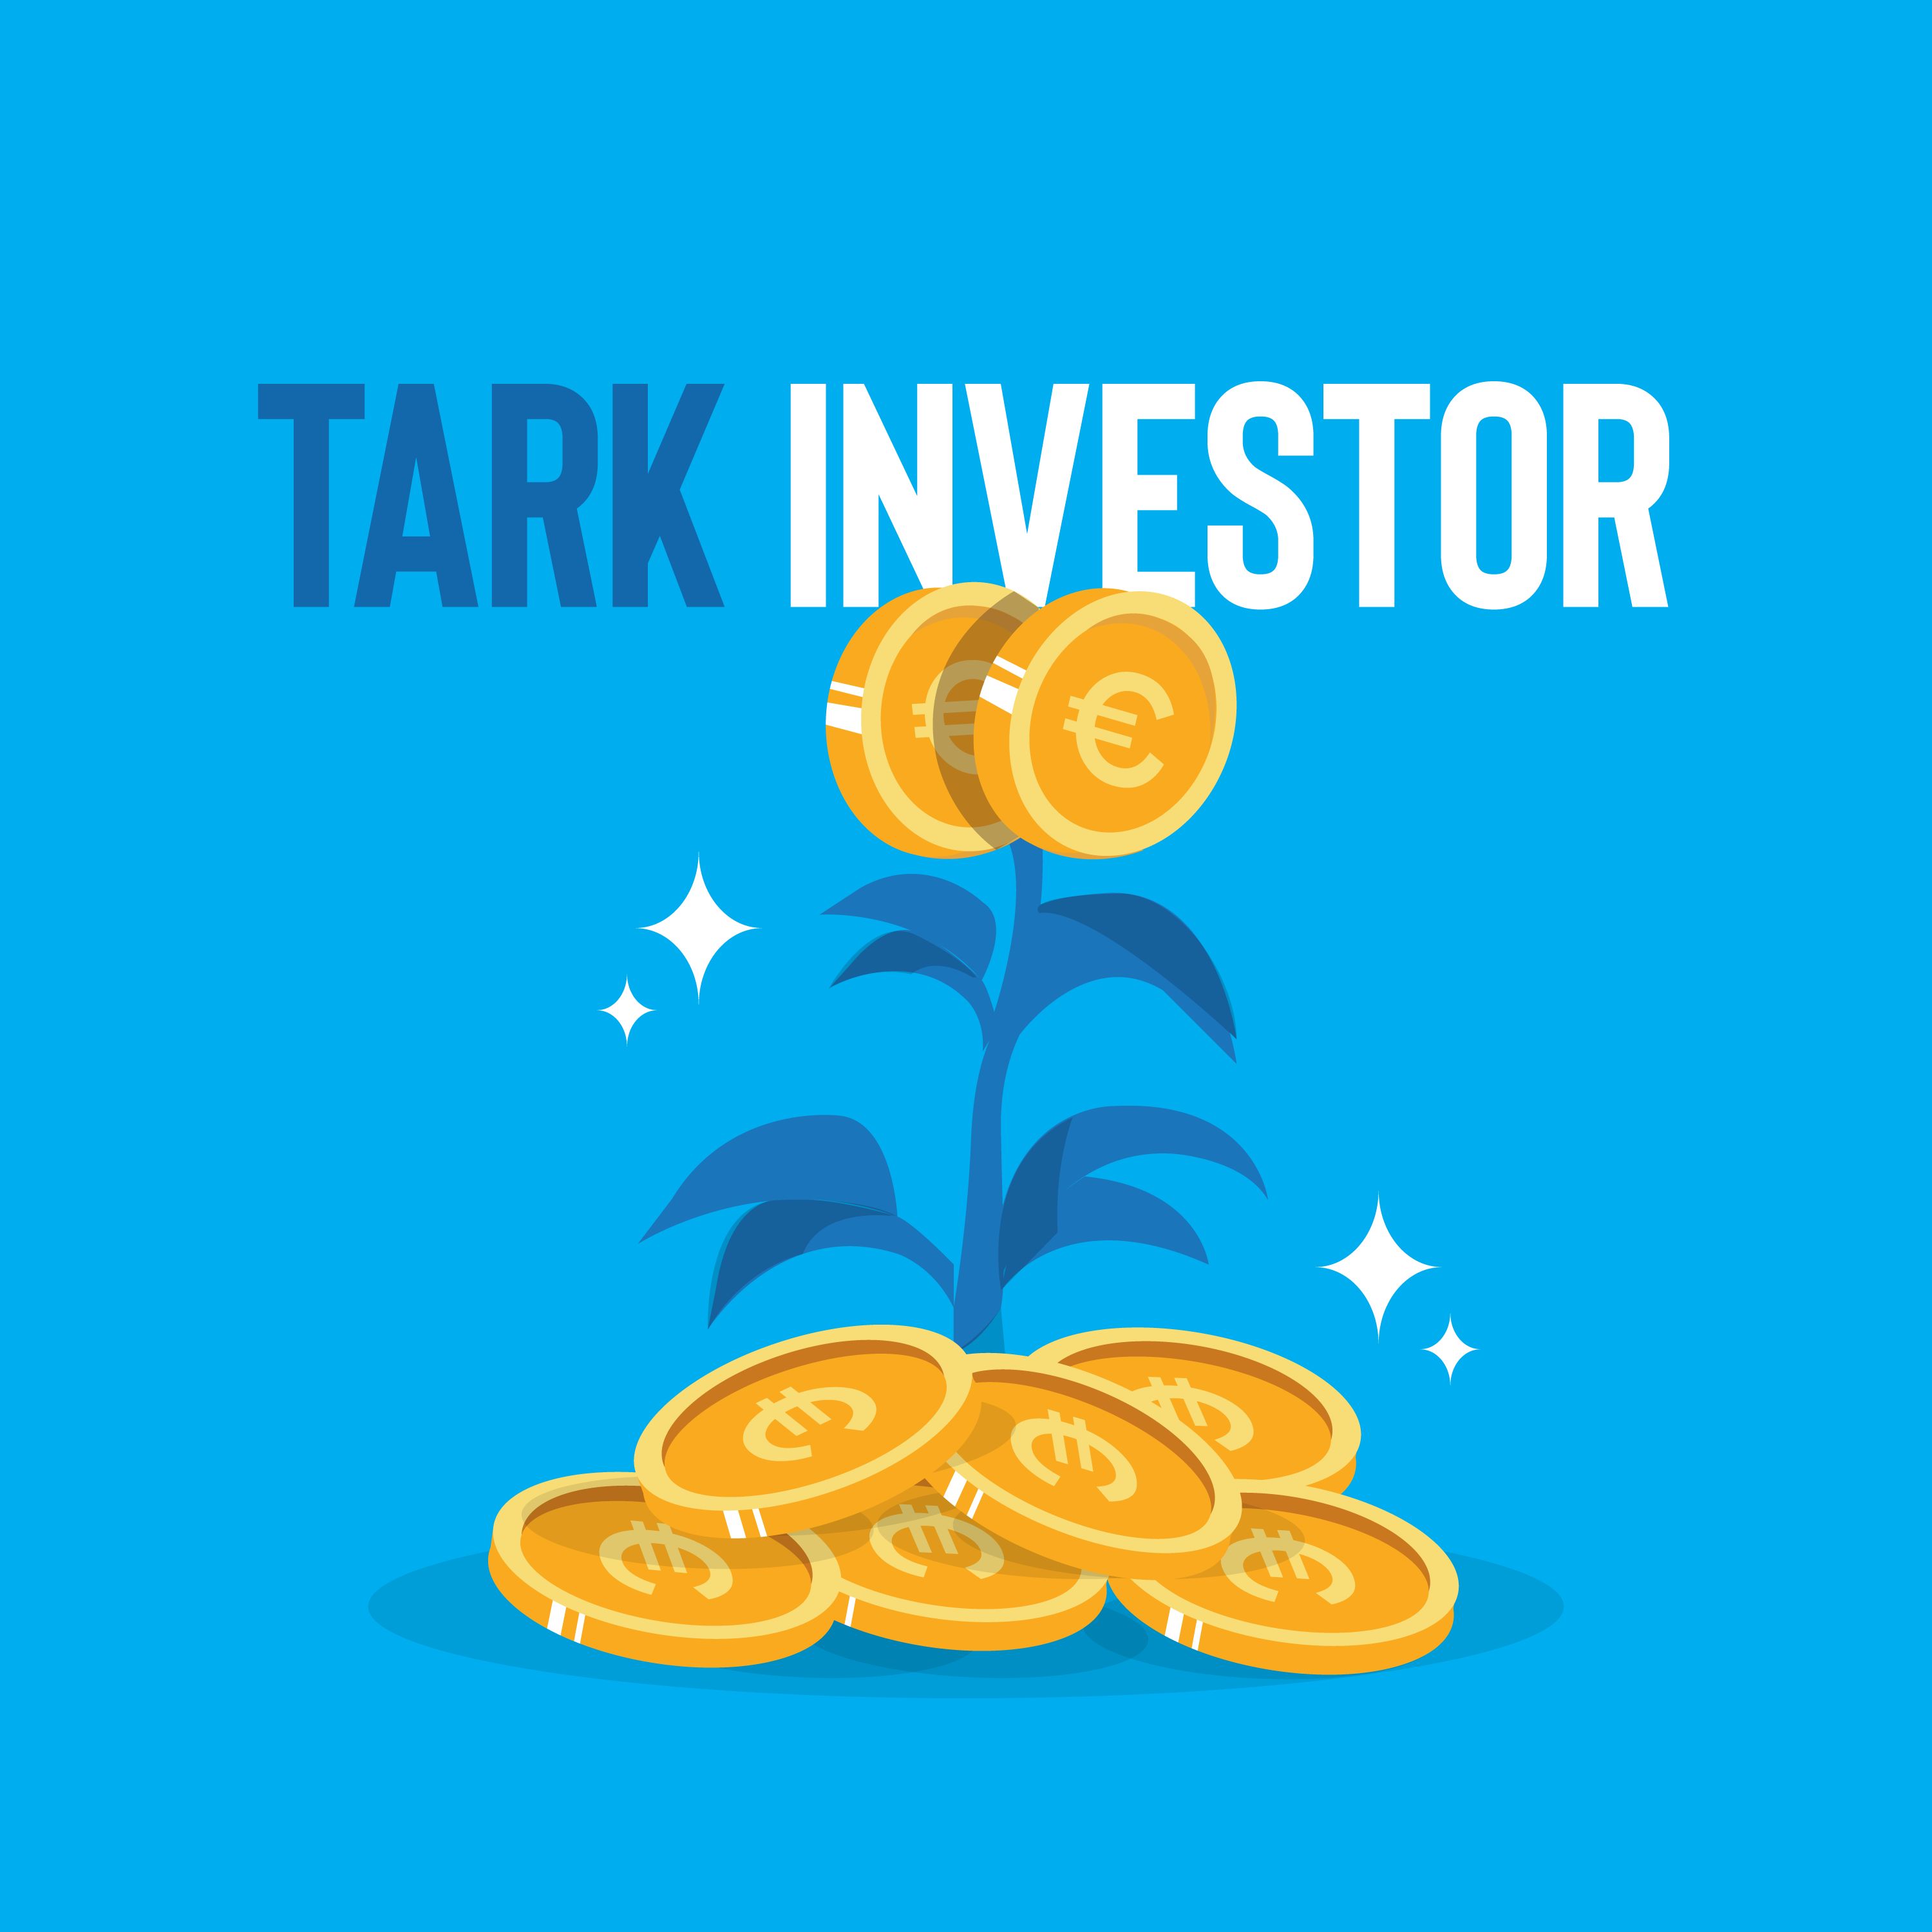 Tark investor